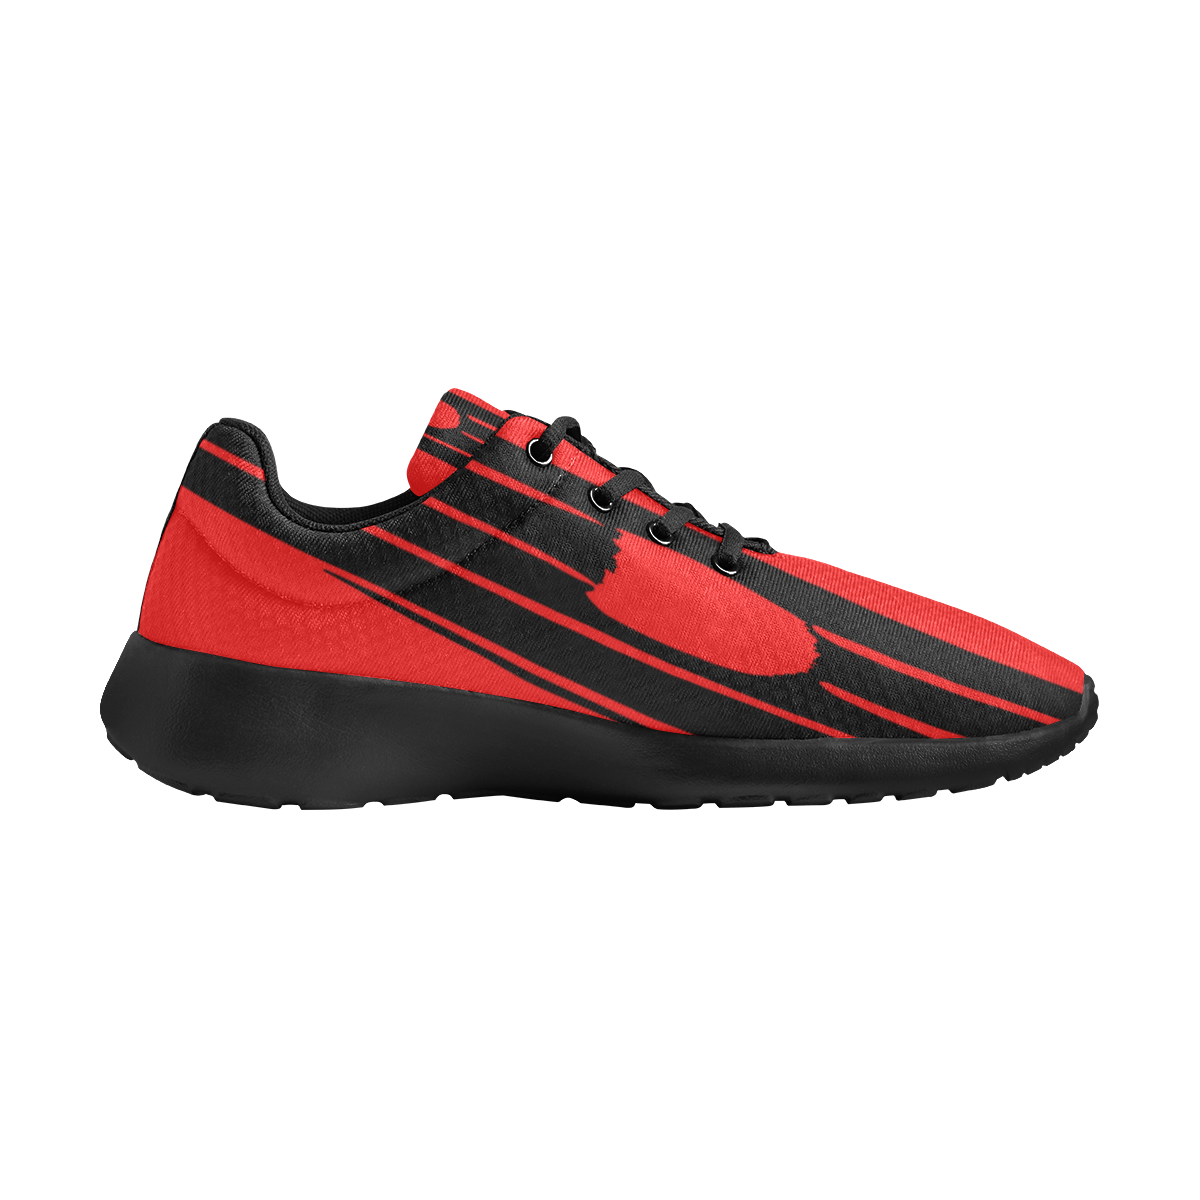 deportivas de mujer patron rojo y negro Women's Athletic Shoes (Model 0200)